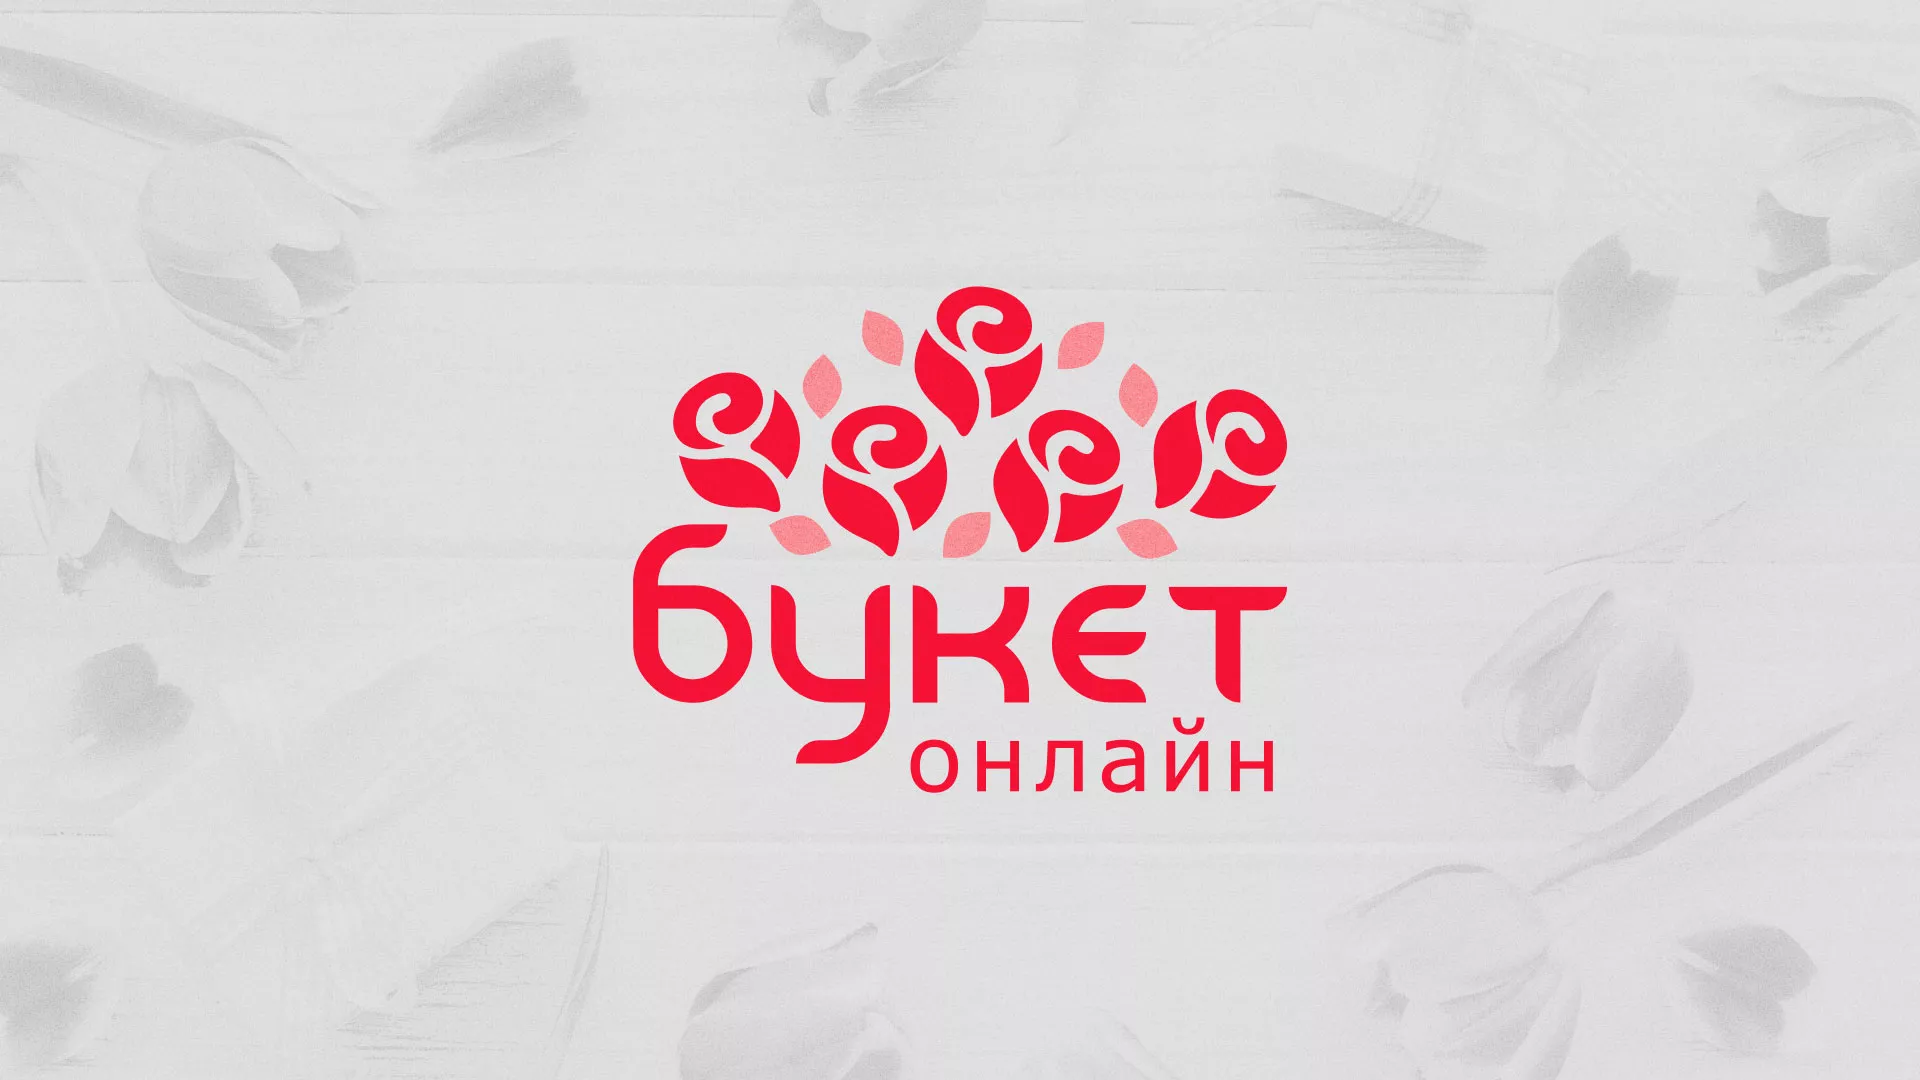 Создание интернет-магазина «Букет-онлайн» по цветам в Усть-Лабинске